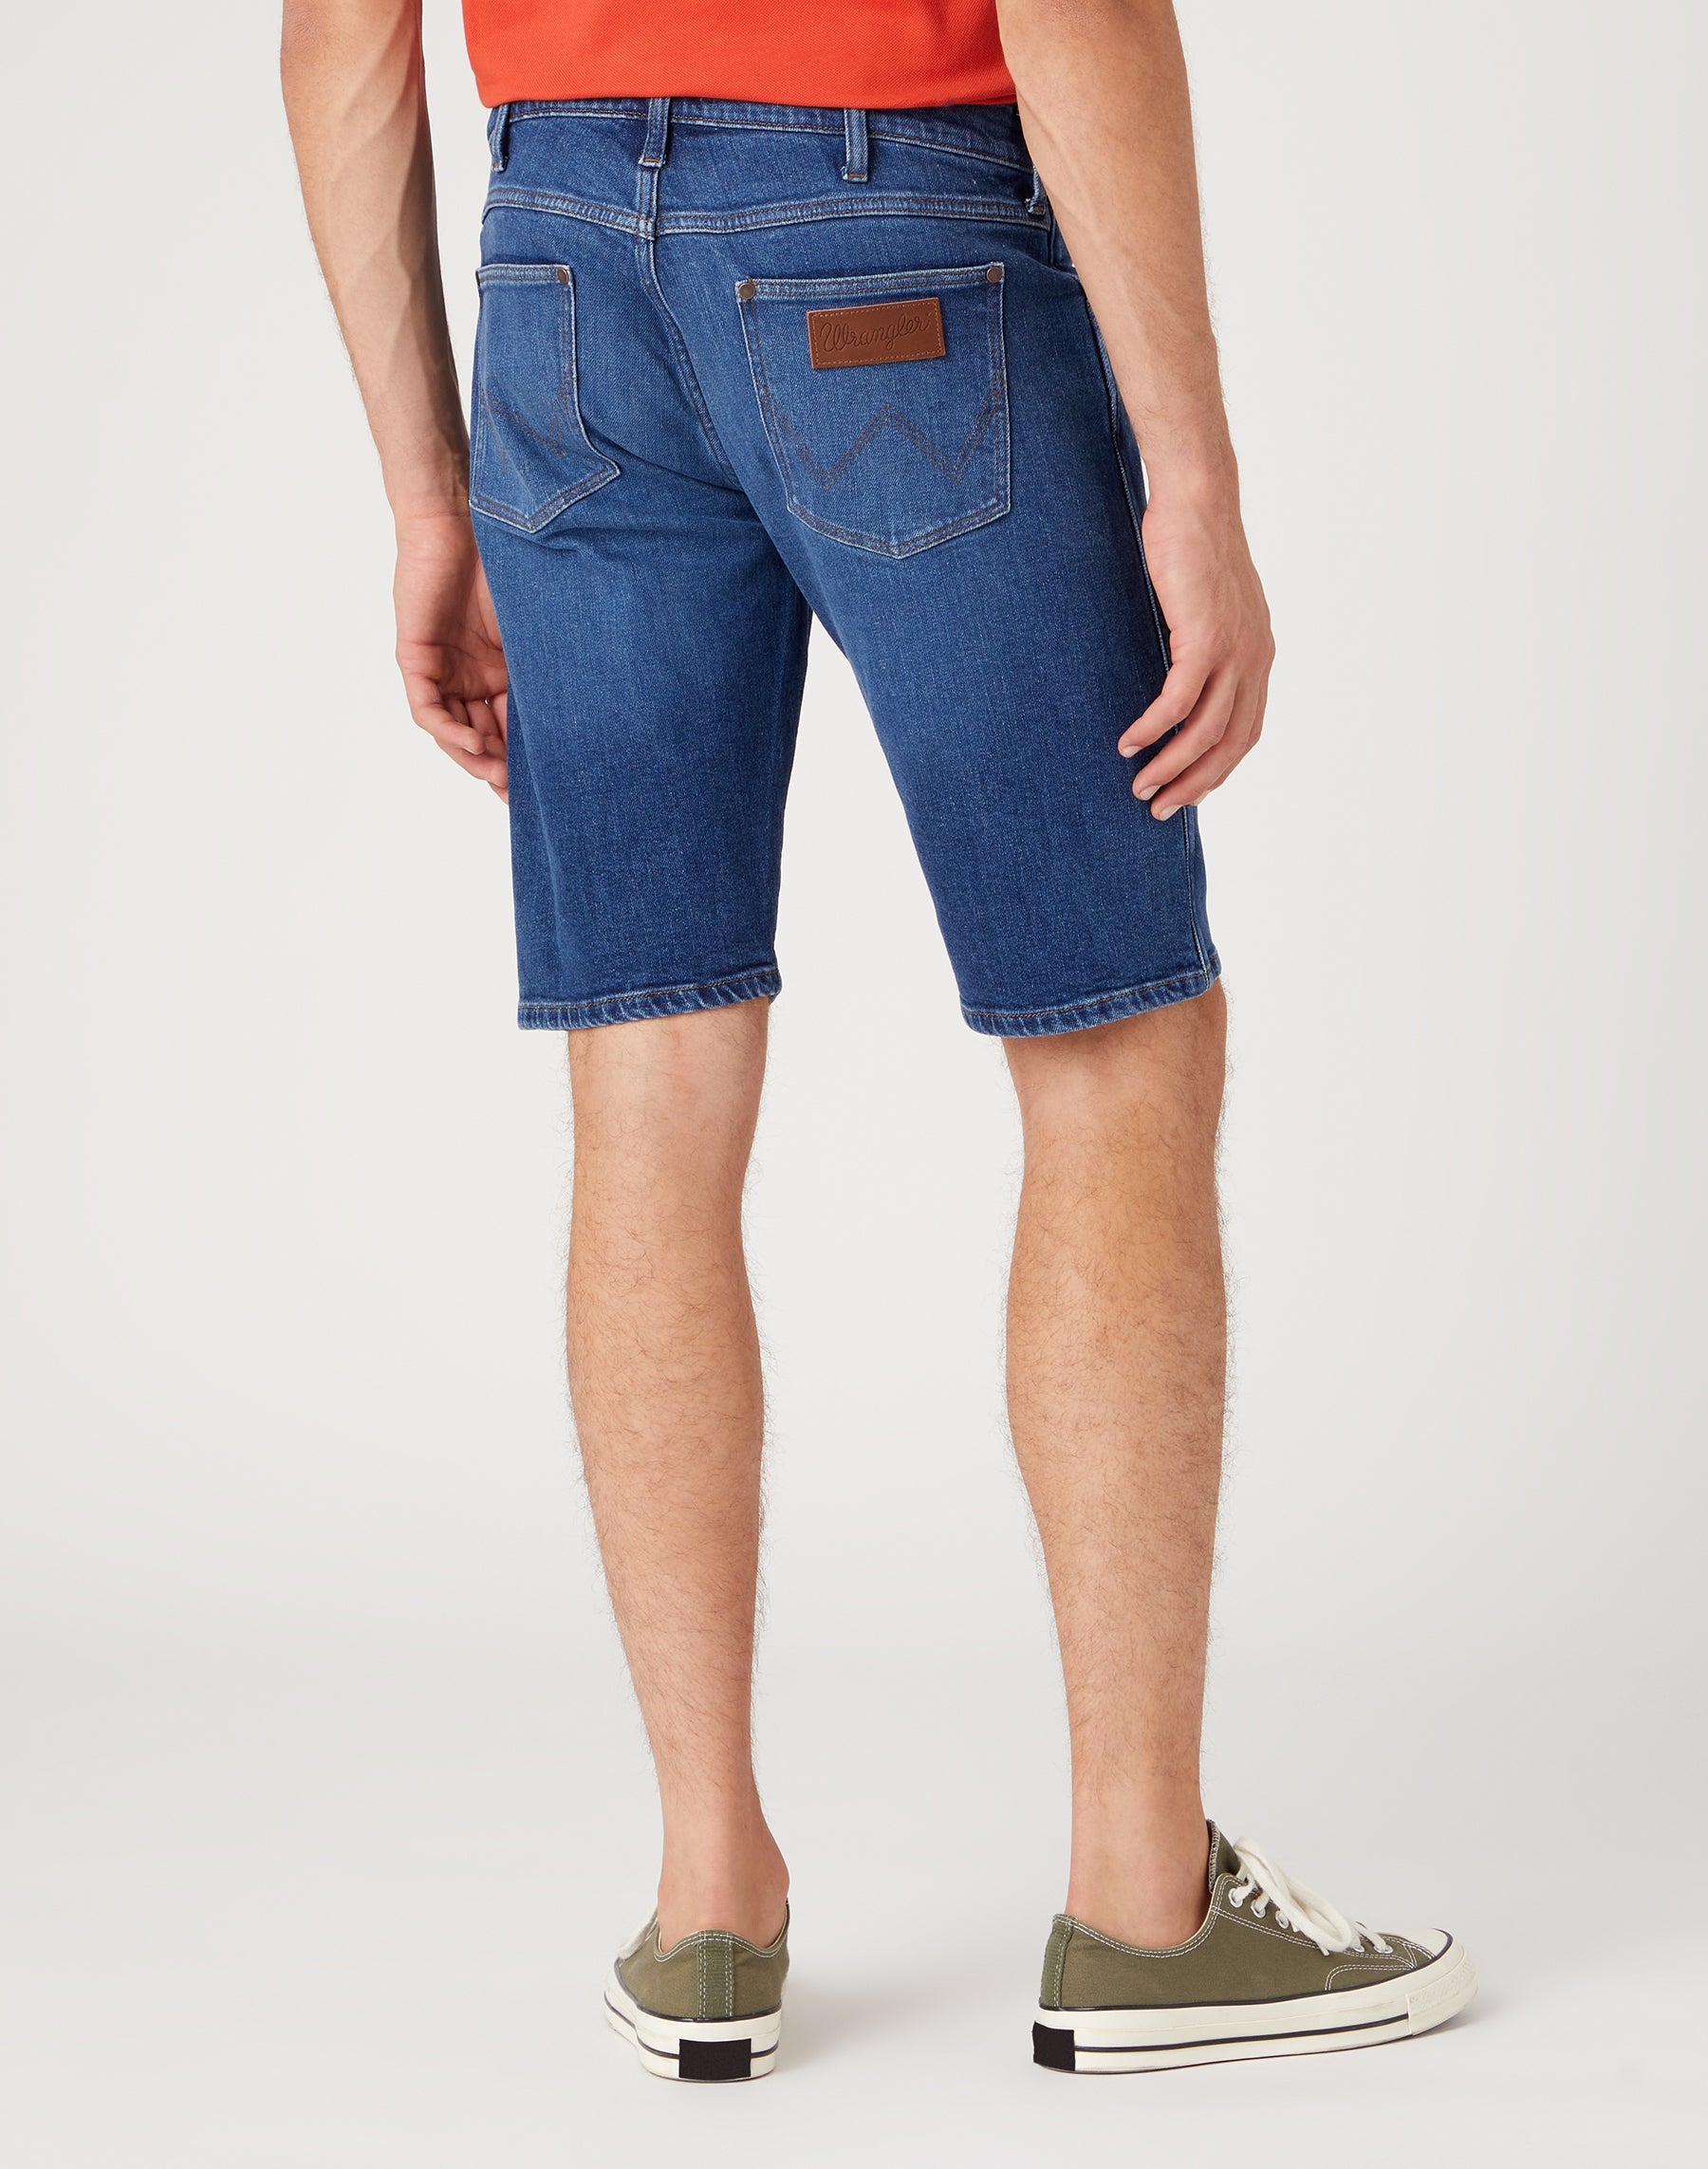 Colton Shorts in Desert Daze Jeansshorts Wrangler   